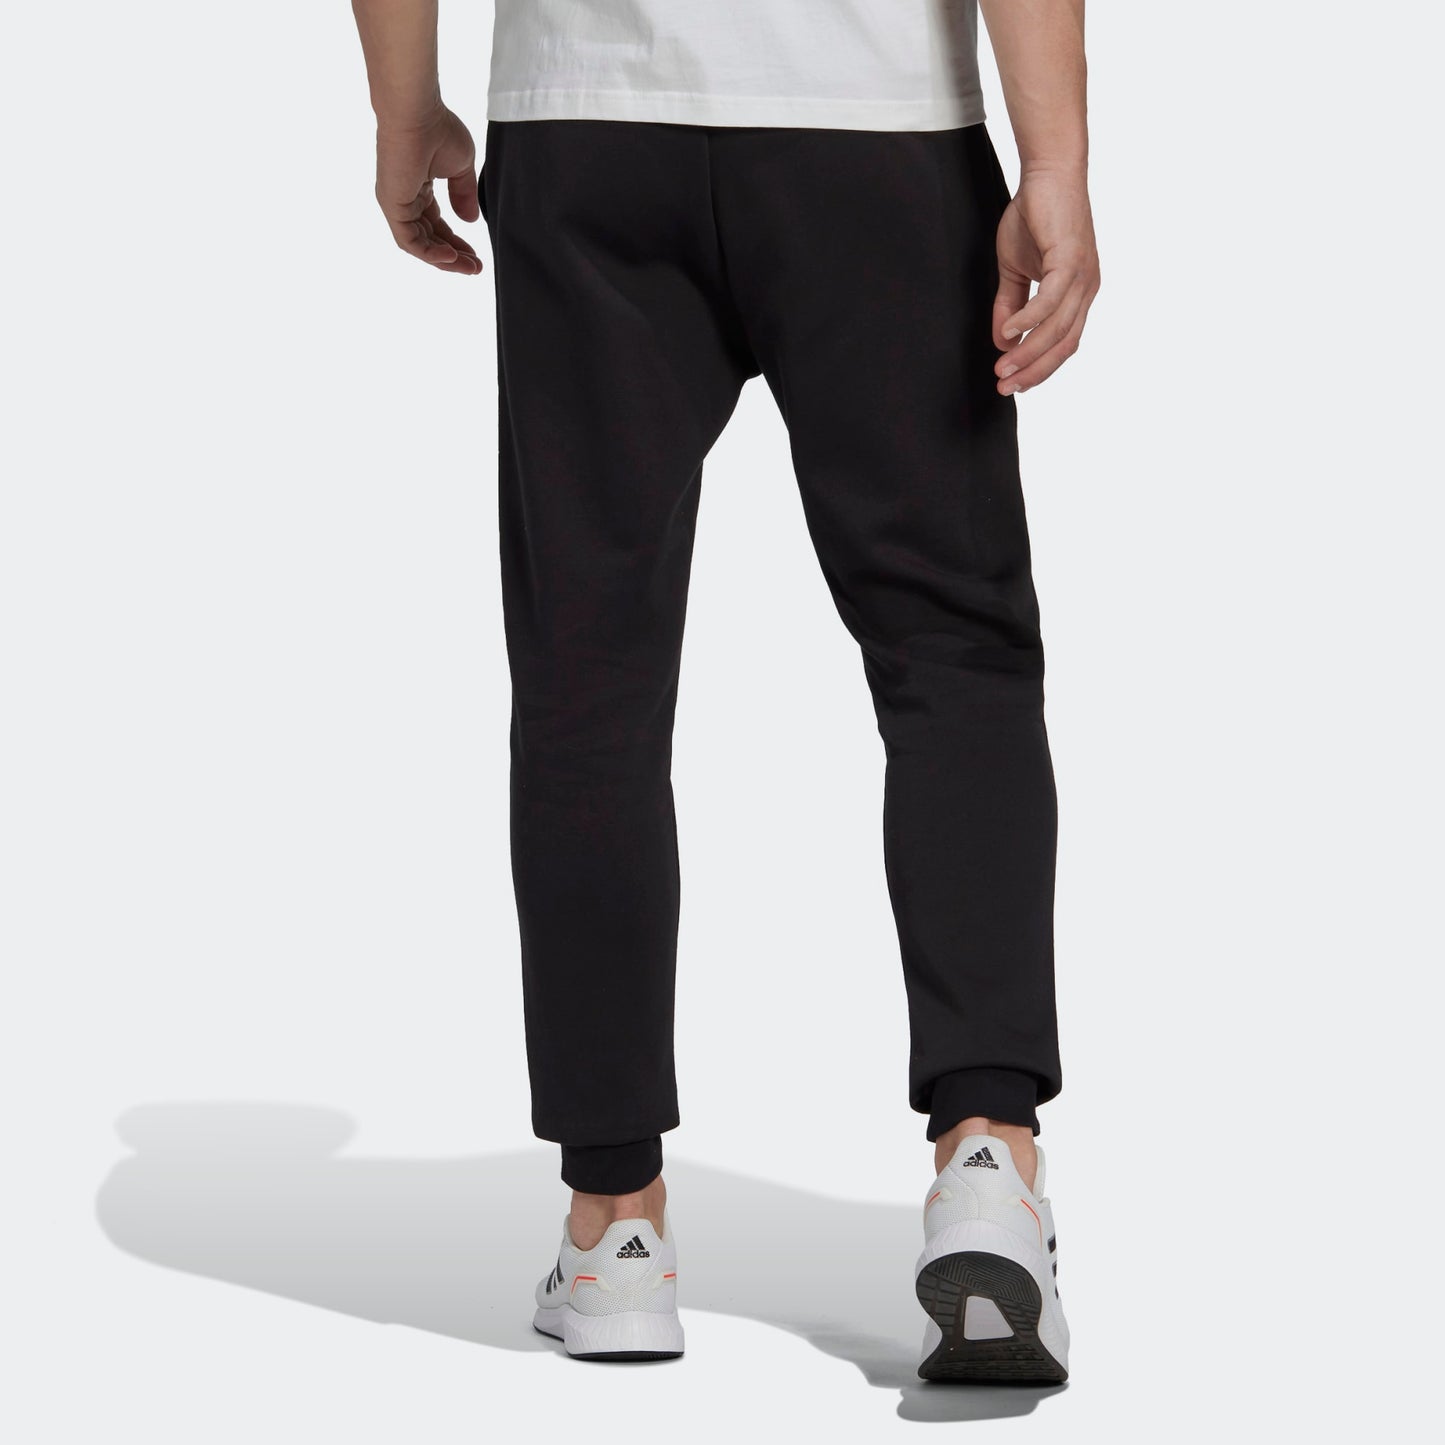 Adidas Mens Feelcozy Pant - Black